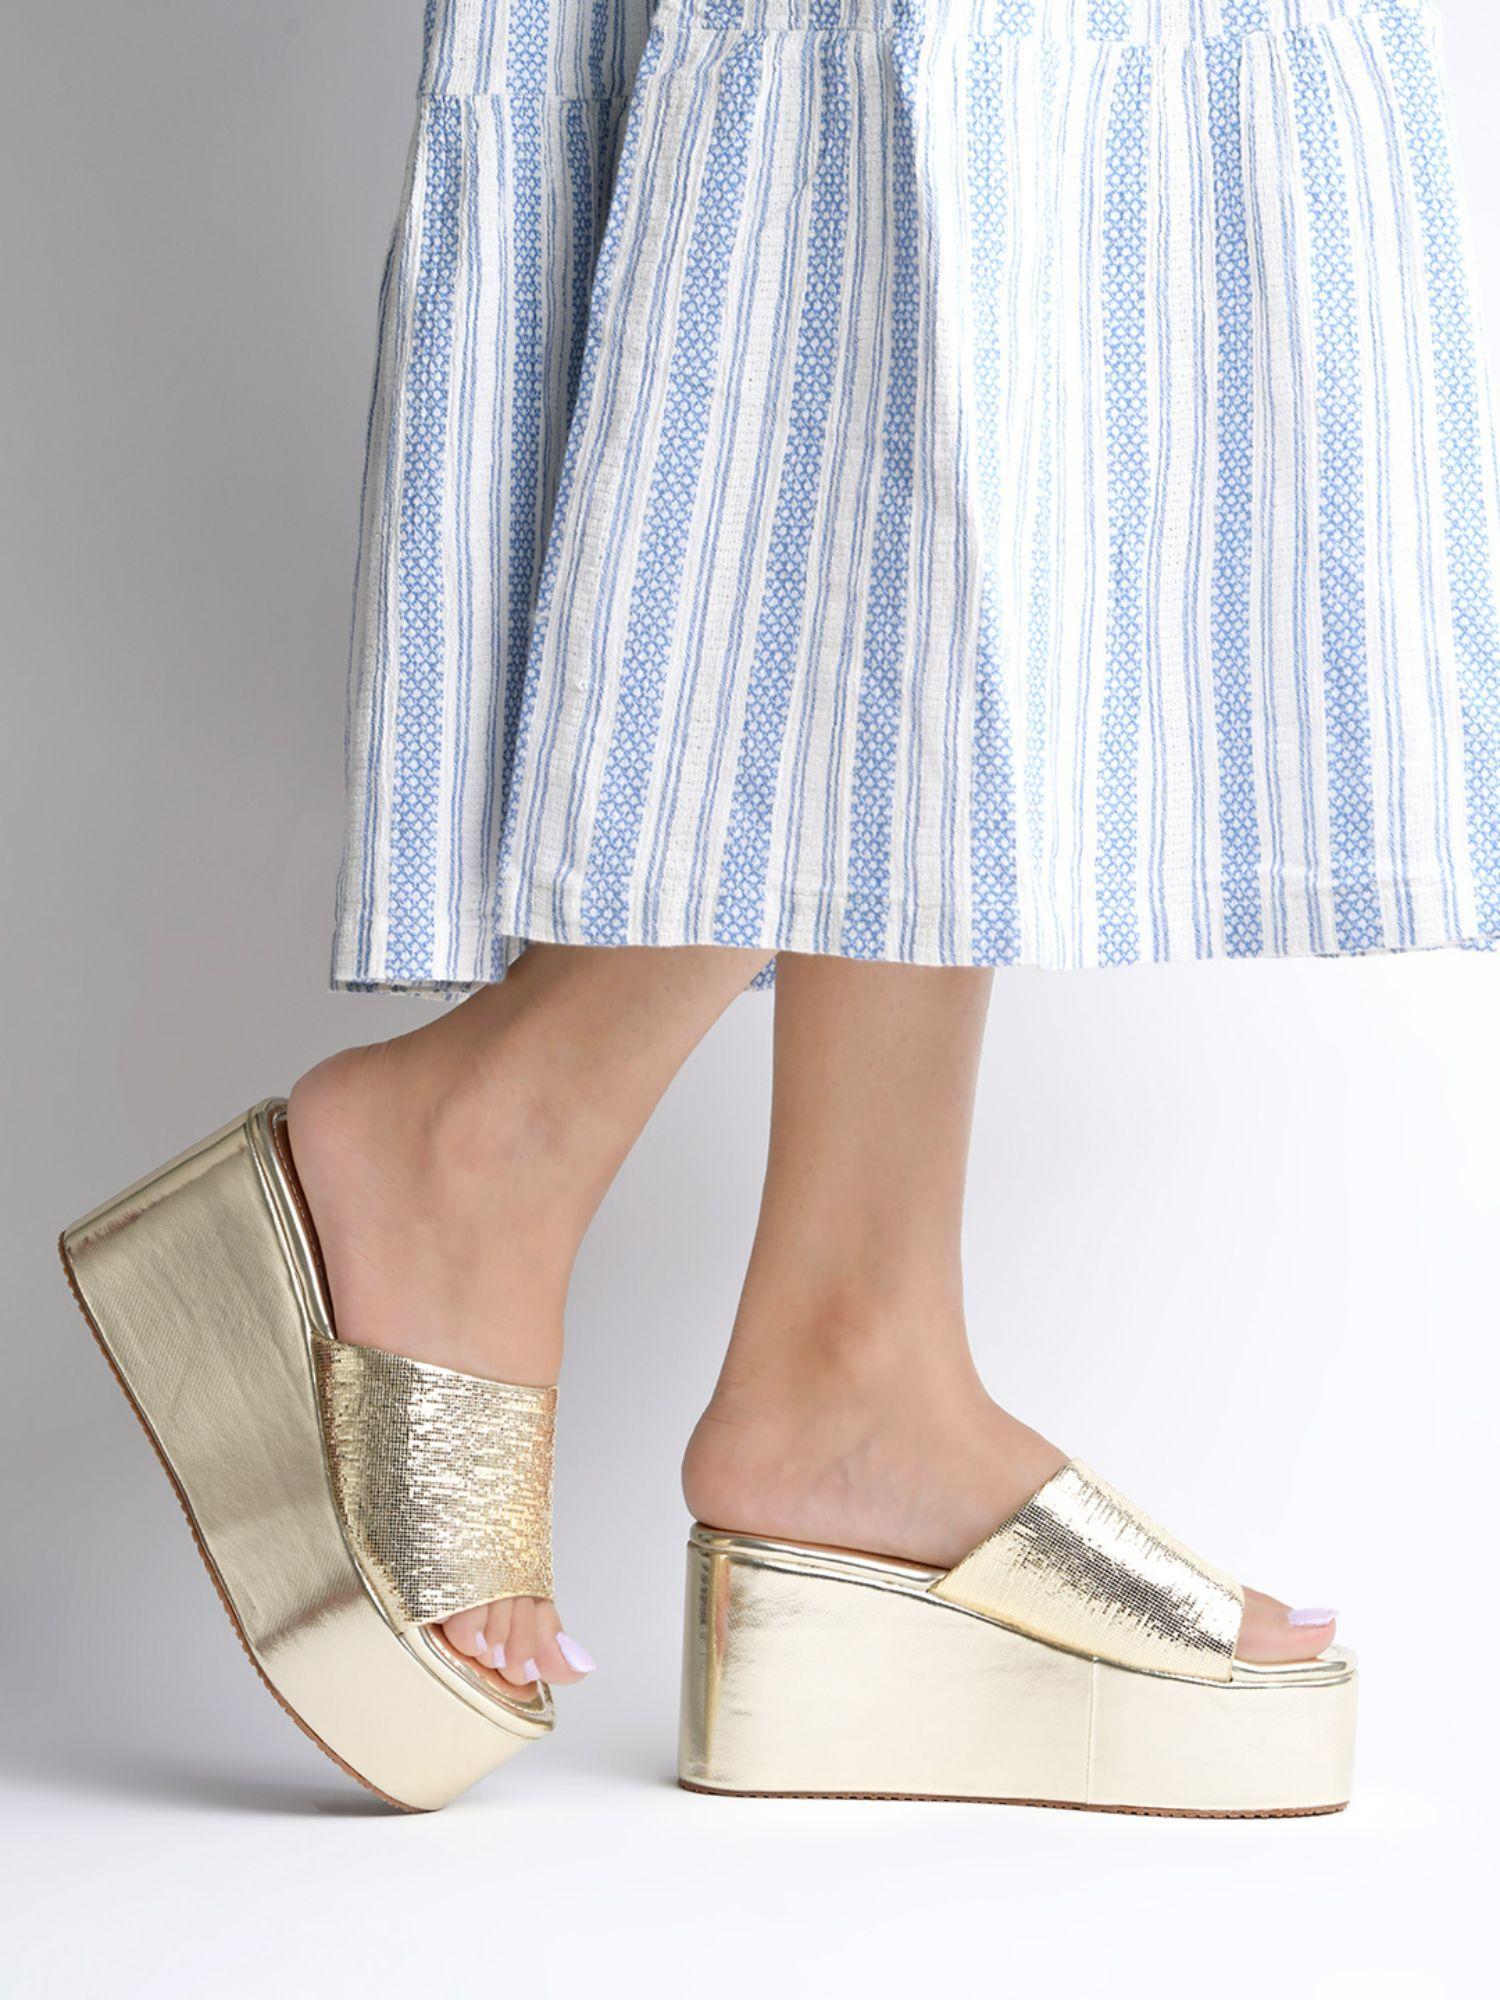 embellished sequence detailed golden wedge heels